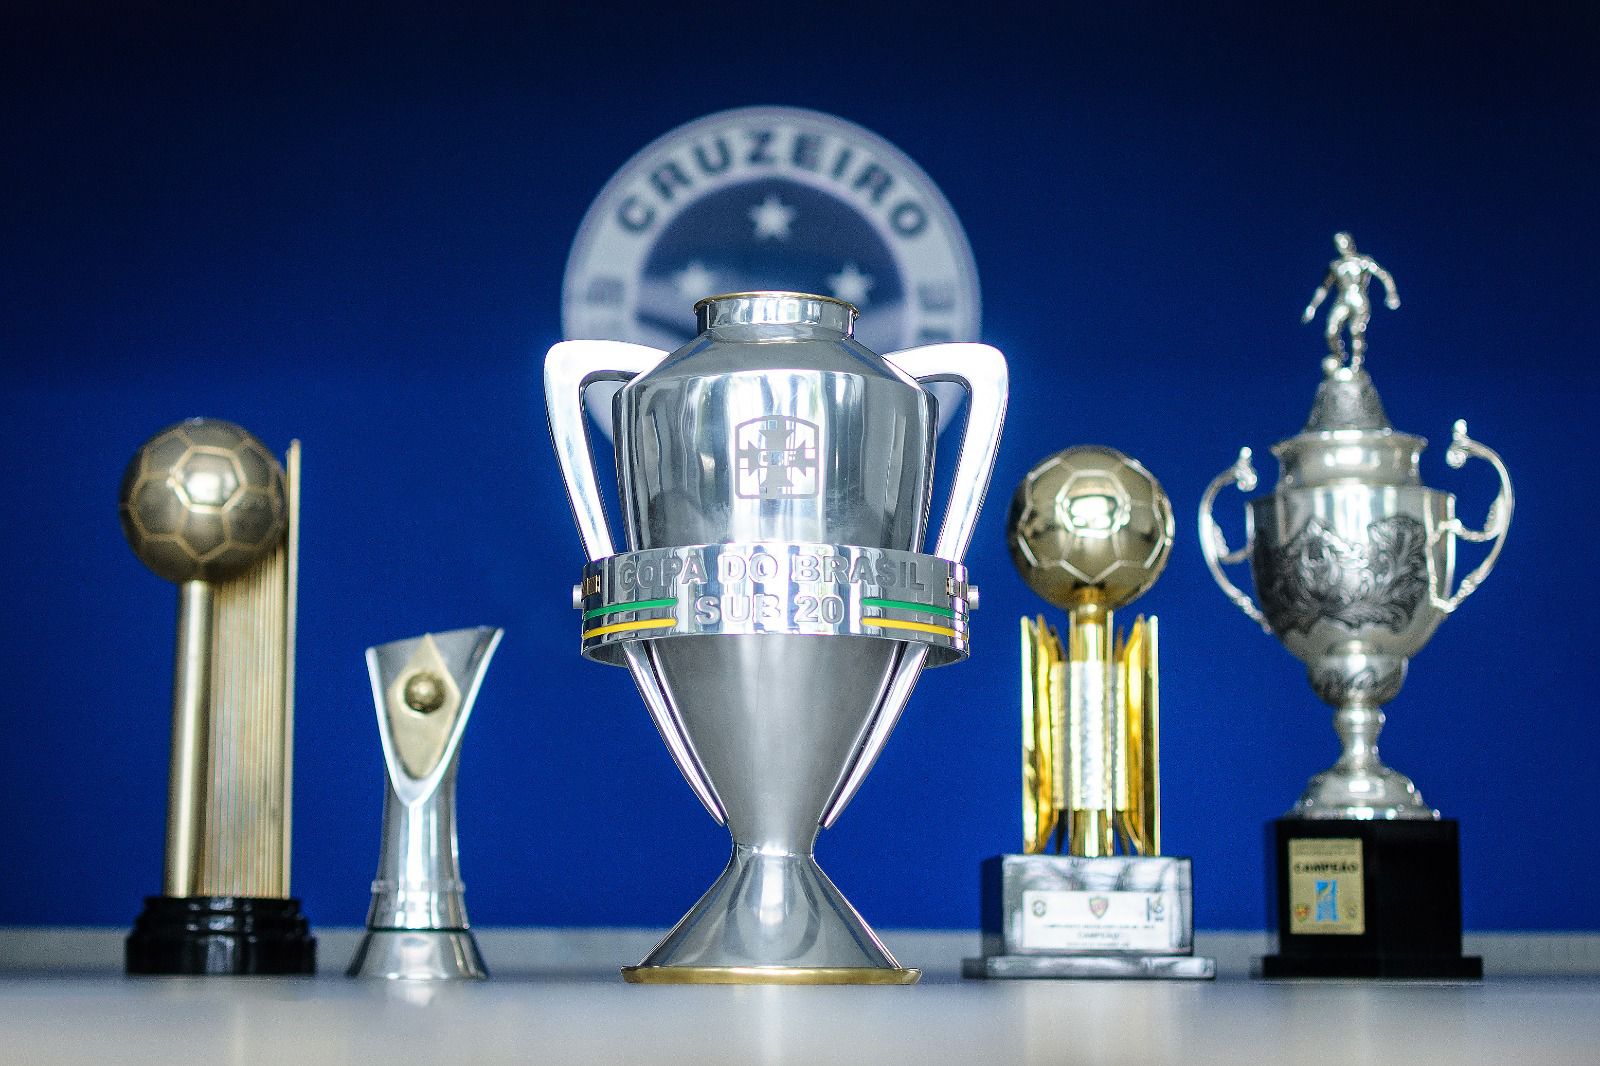 Cruzeiro Esporte Clube - Escalação do Cruzeiro hoje! #BoraMeuCruzeiro